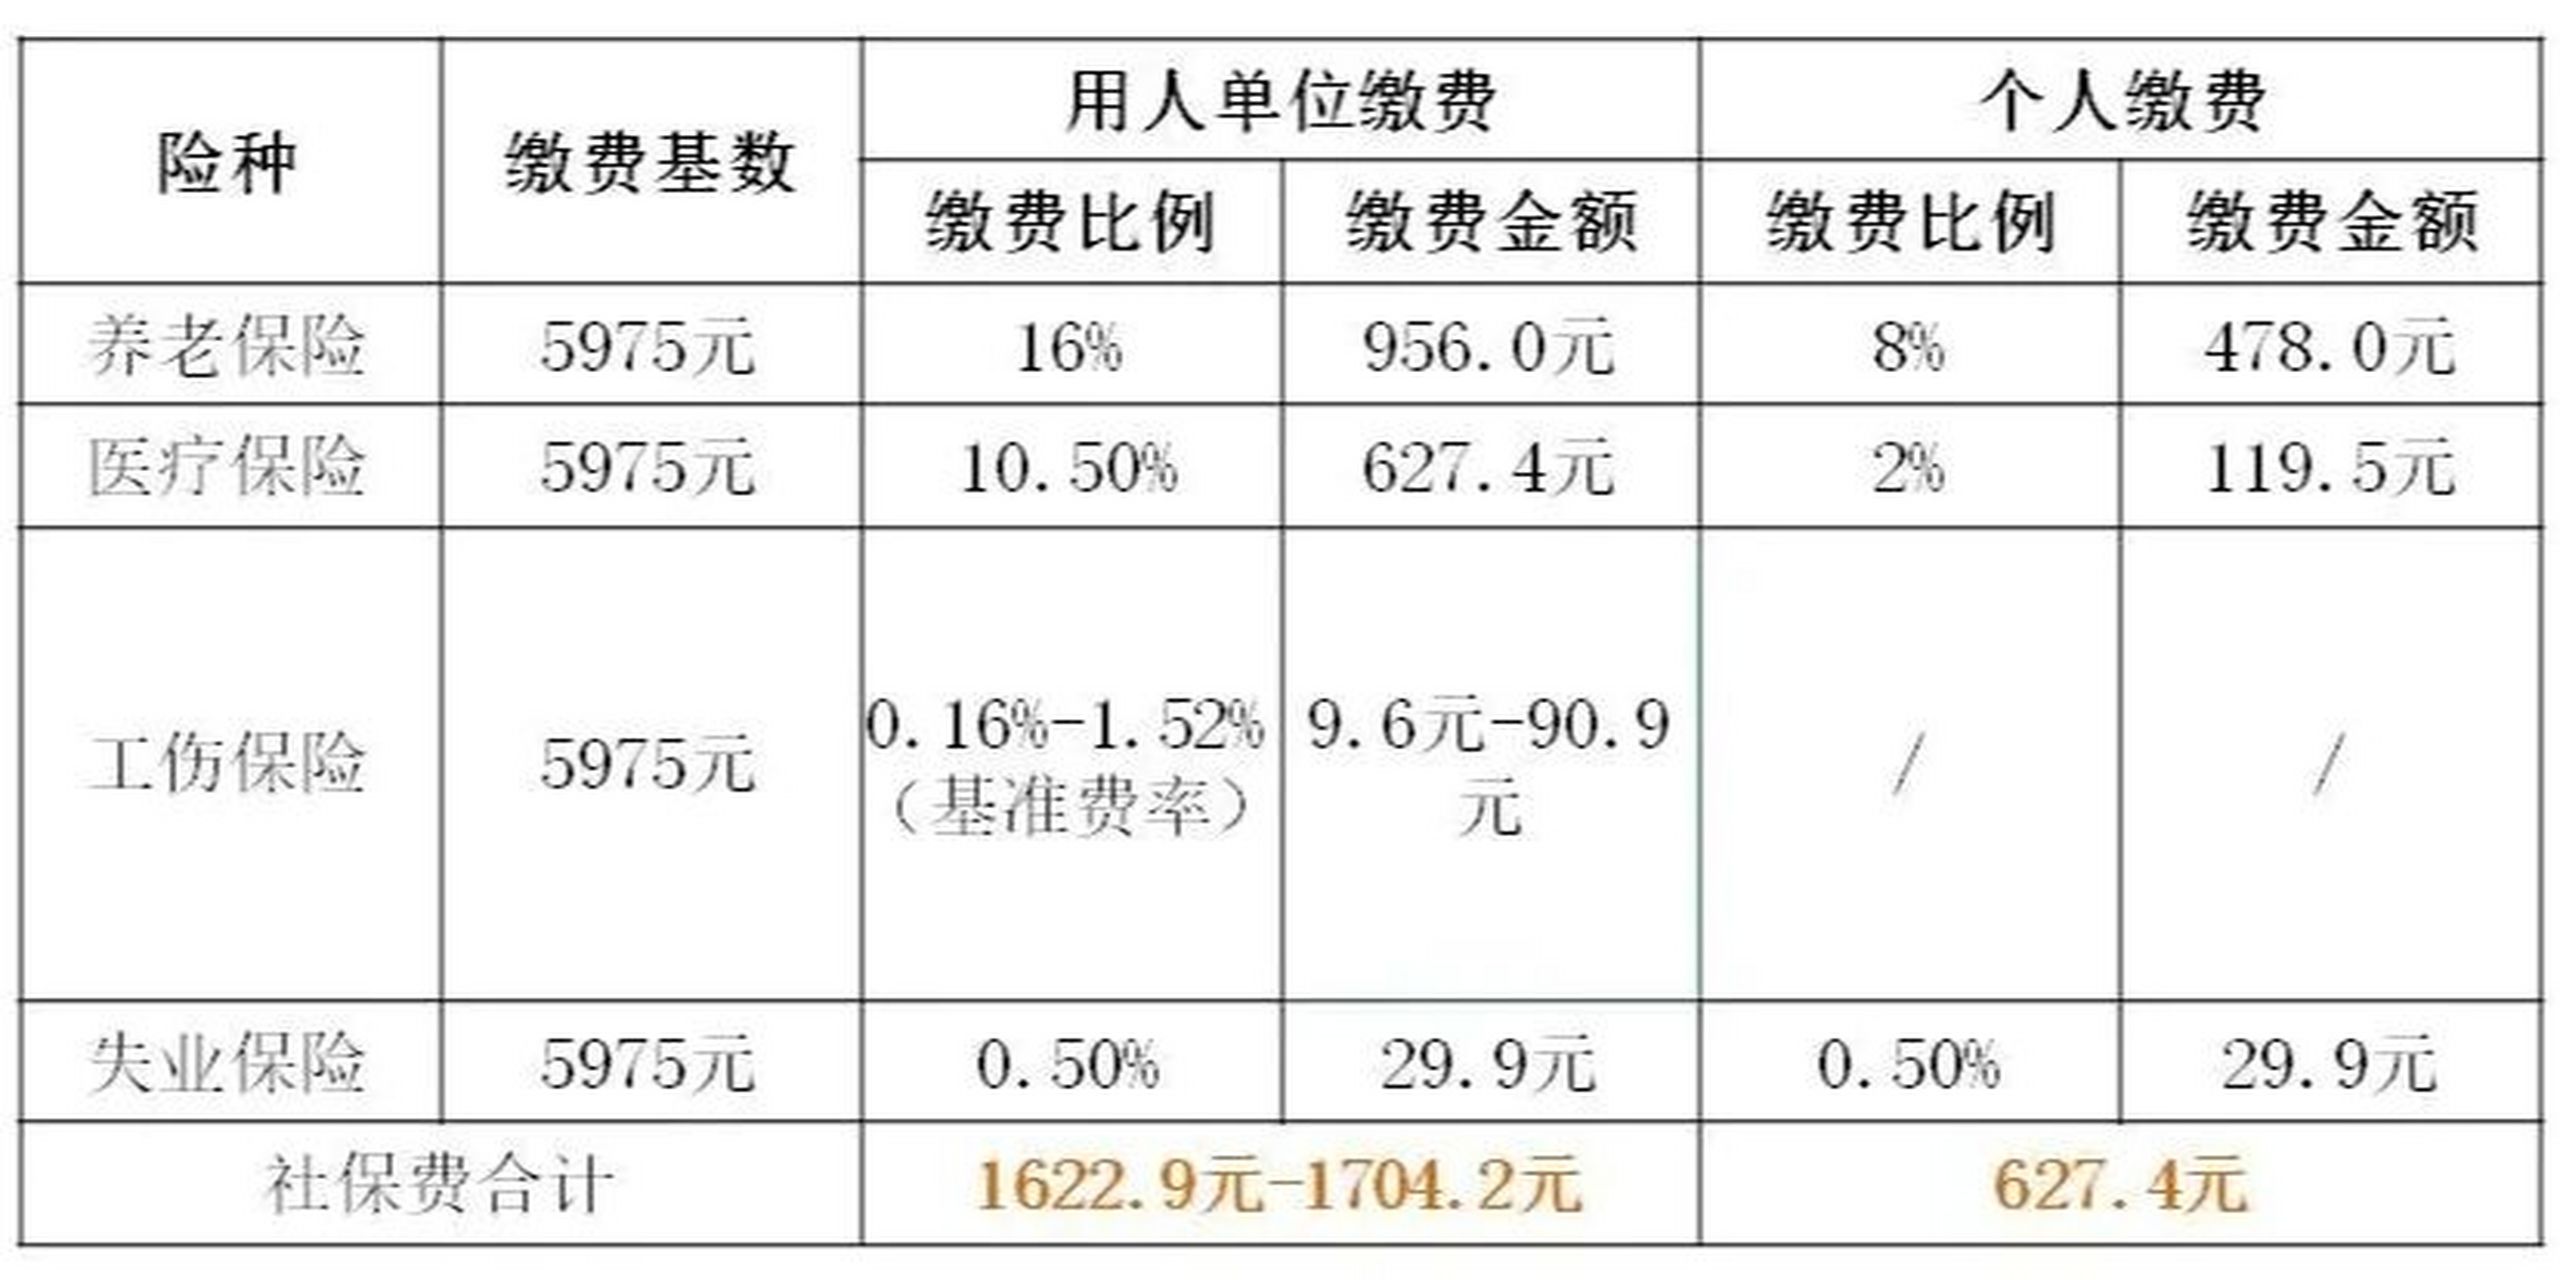 上海社保缴费基数速算 2021年7月1日起,上海社保缴费基数及比例如下